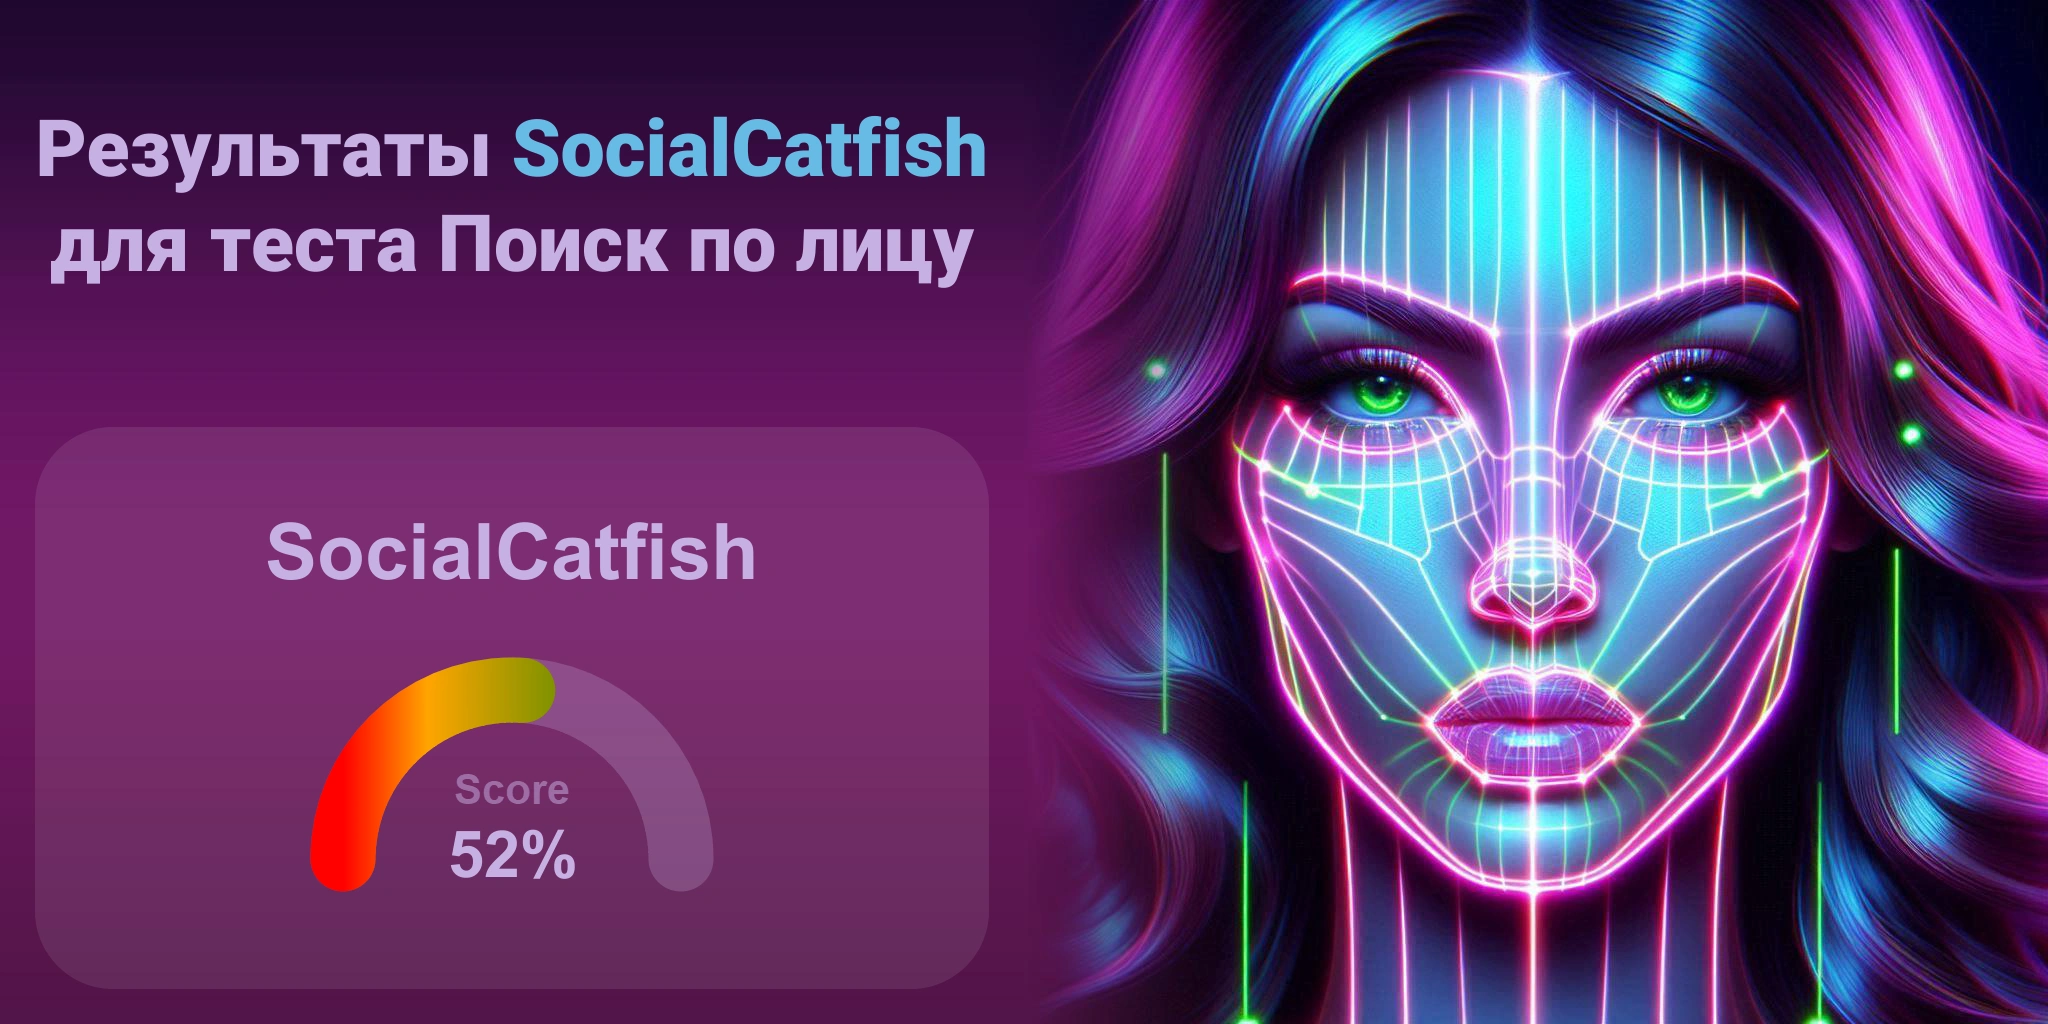 Является ли SocialCatfish лучшим для поиска по лицам?